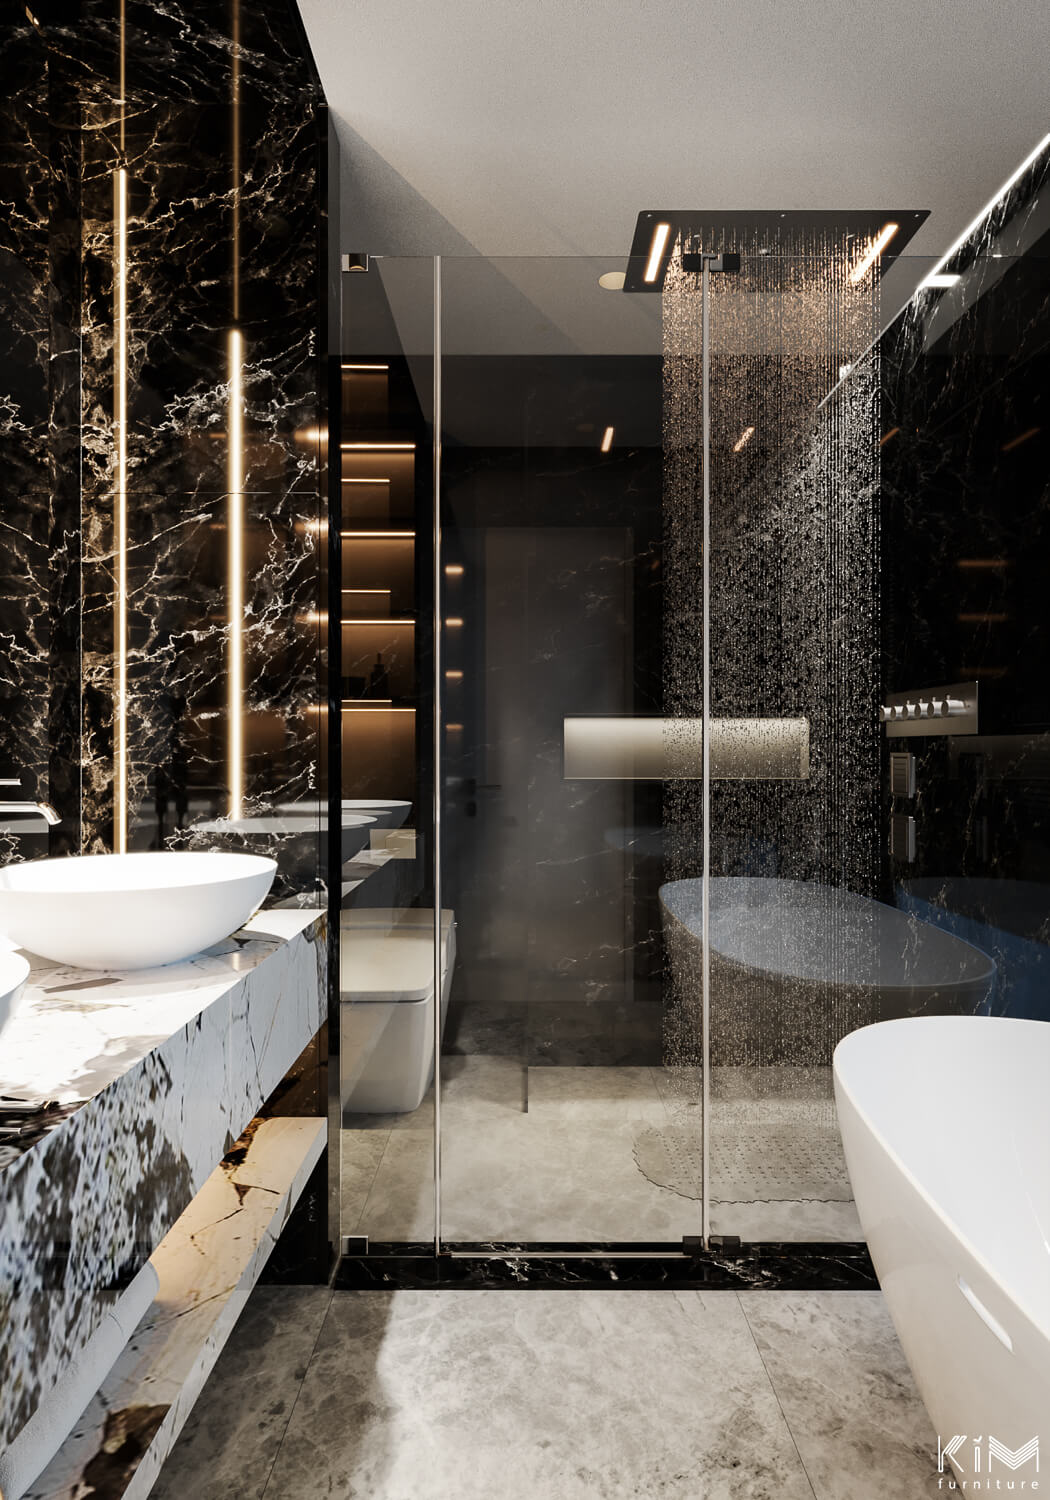 Thiết kế phòng tắm hiện đại Modern Luxury với đèn rọi 